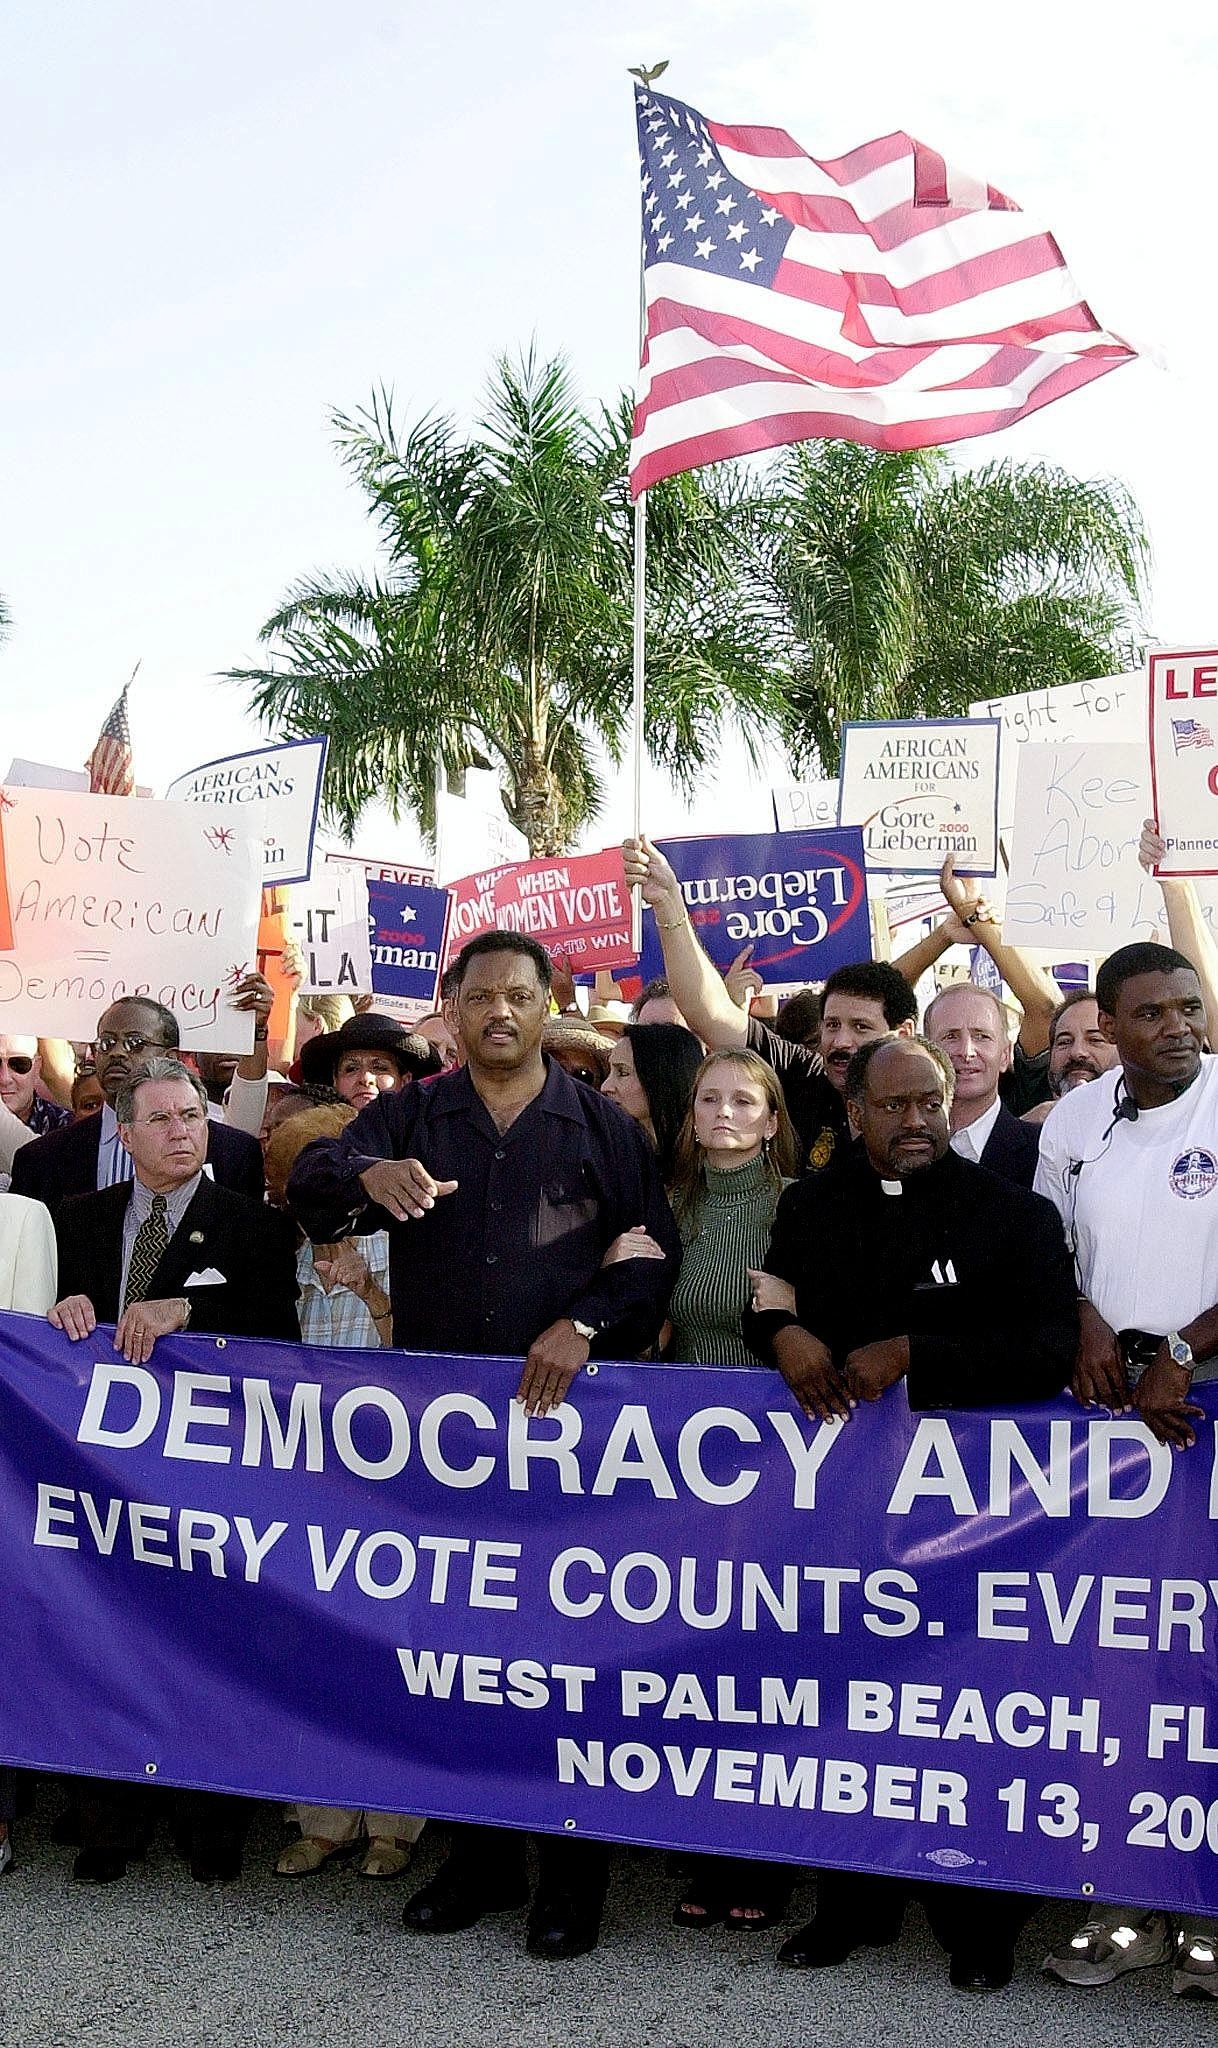 Manifestation en soutien à Al Gore, candidat démocrate à la présidentielle américaine, pour demander un recomptage des votes, West Palm Beach, Floride, 13 novembre 2000. © ROBERTO SCHMIDT